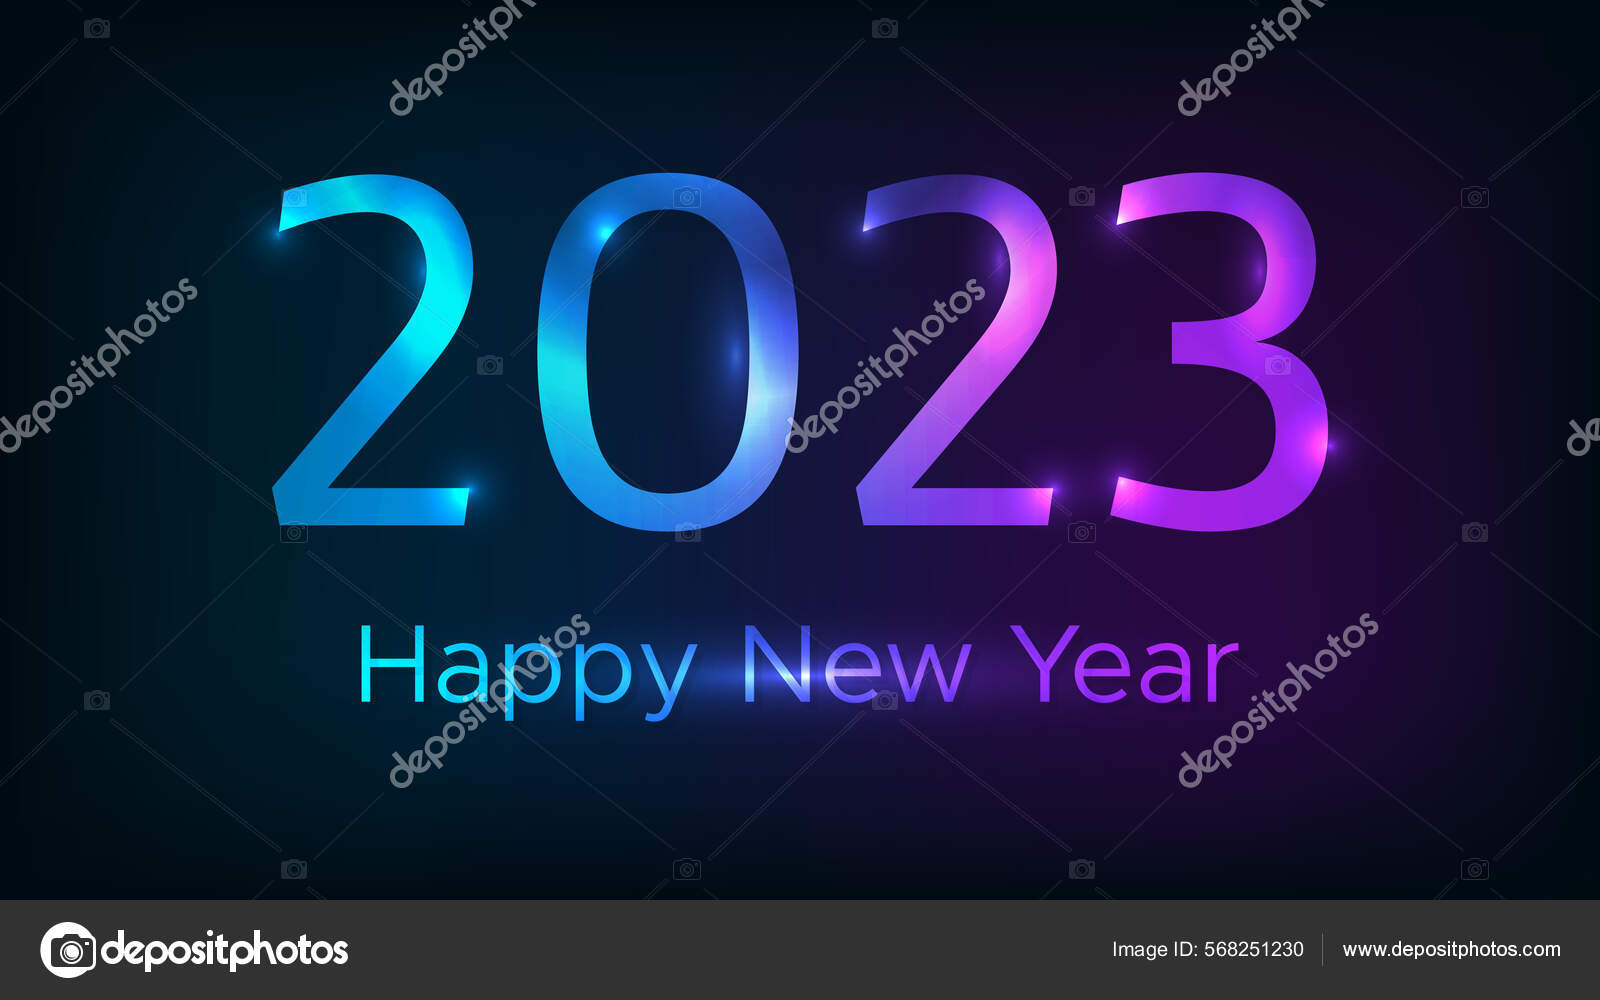 Với những hình ảnh đầy màu sắc và ấn tượng, bạn sẽ được trải nghiệm một lễ hội tuyệt vời và đầy ý nghĩa khi đón chào năm mới 2024 màu tím.